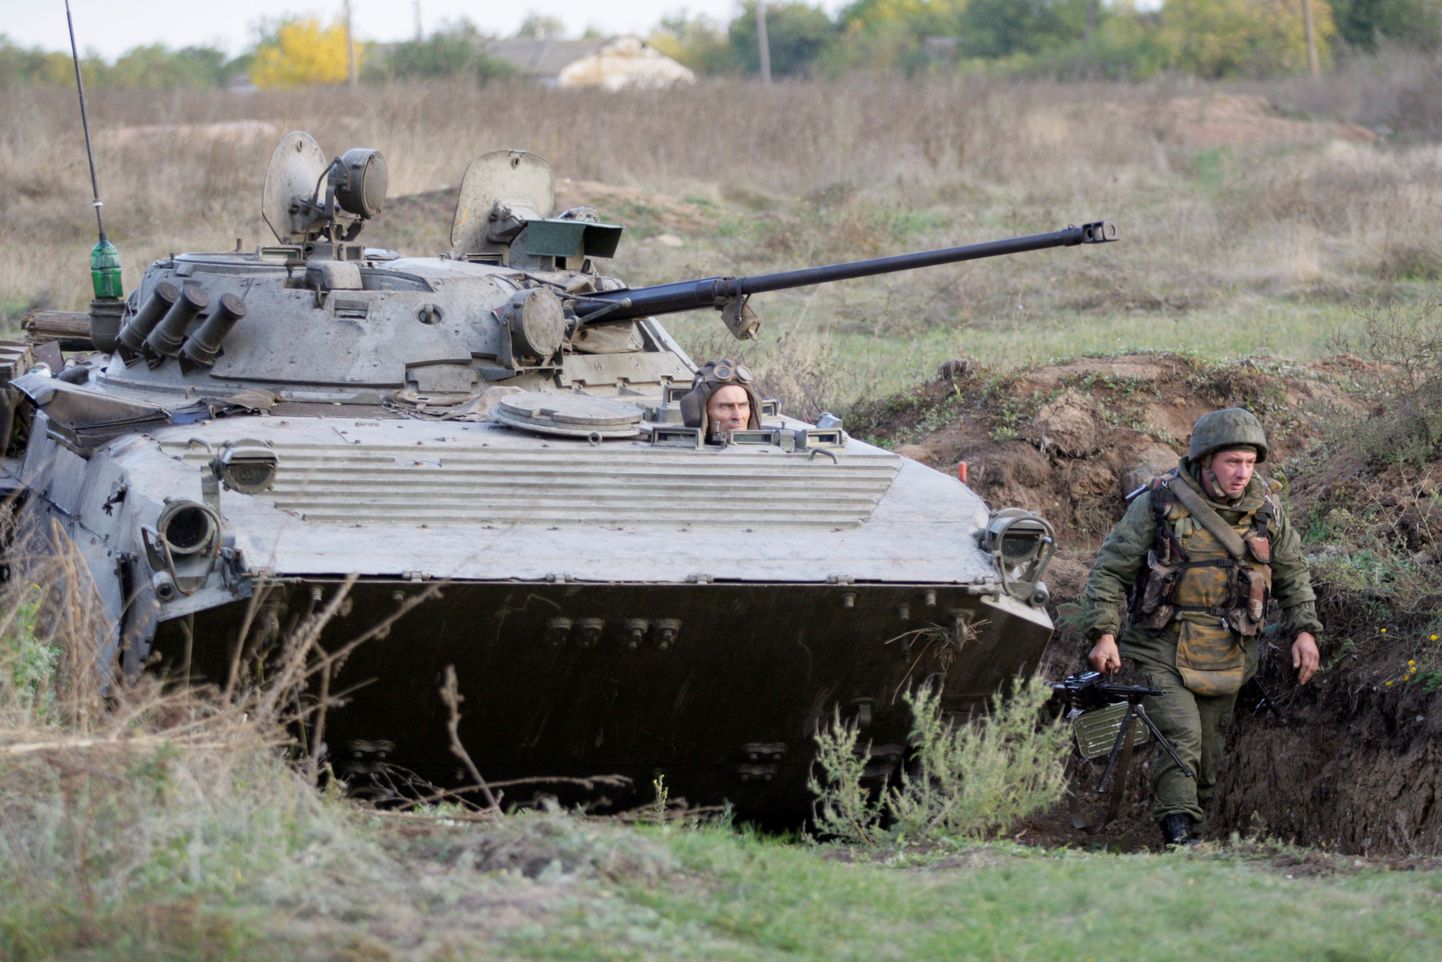 Isehakanud Donetski rahvavabariigi  võitlejad Petrovskoye küla lähedal Ukrainas.